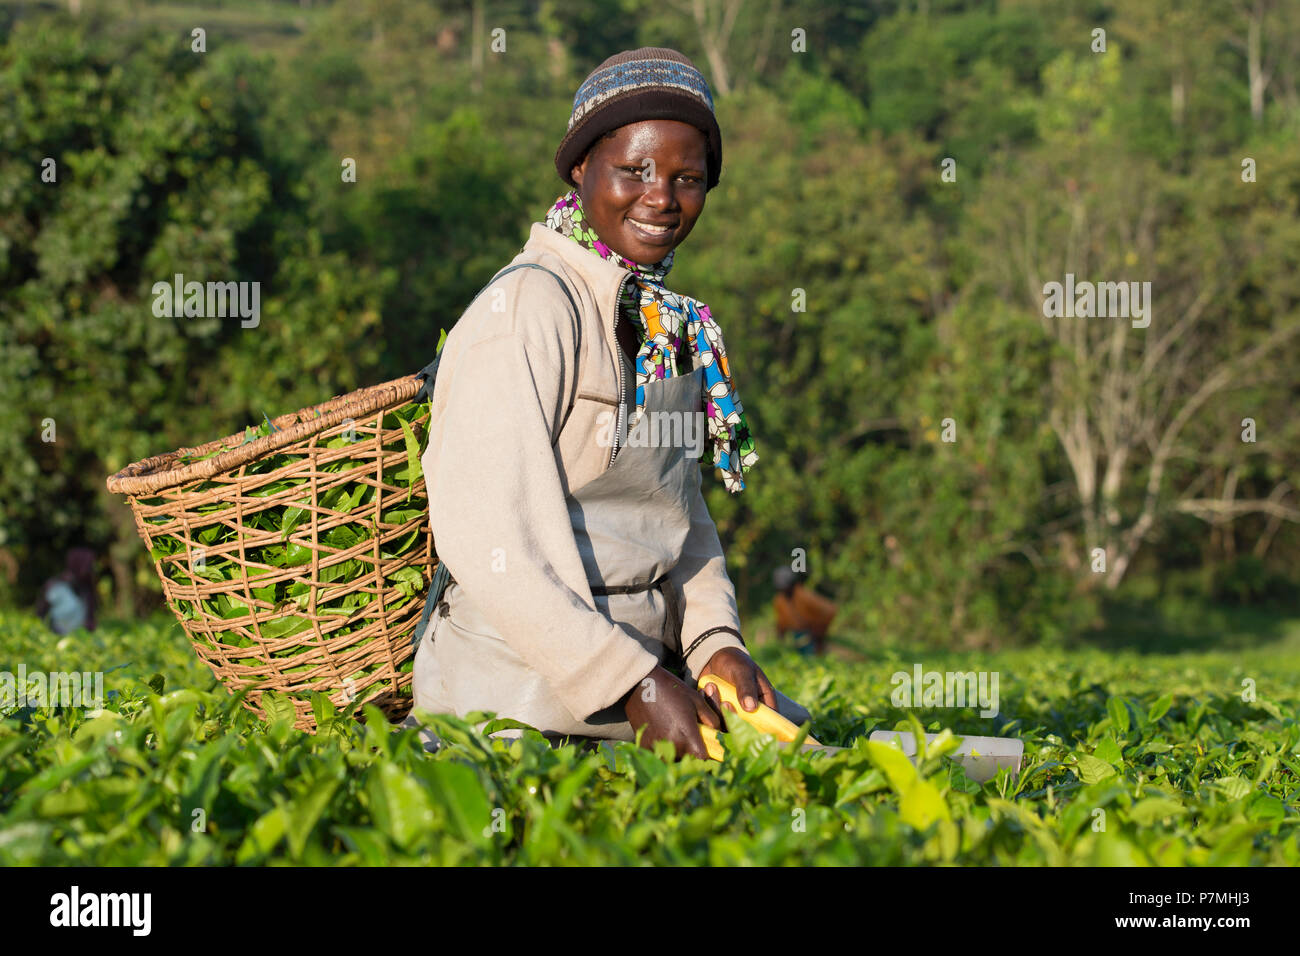 La raccolta del tè, Donna ugandese di raccolti di tè, raccogliendo le foglie di tè nella regione di Ankole, Uganda Foto Stock